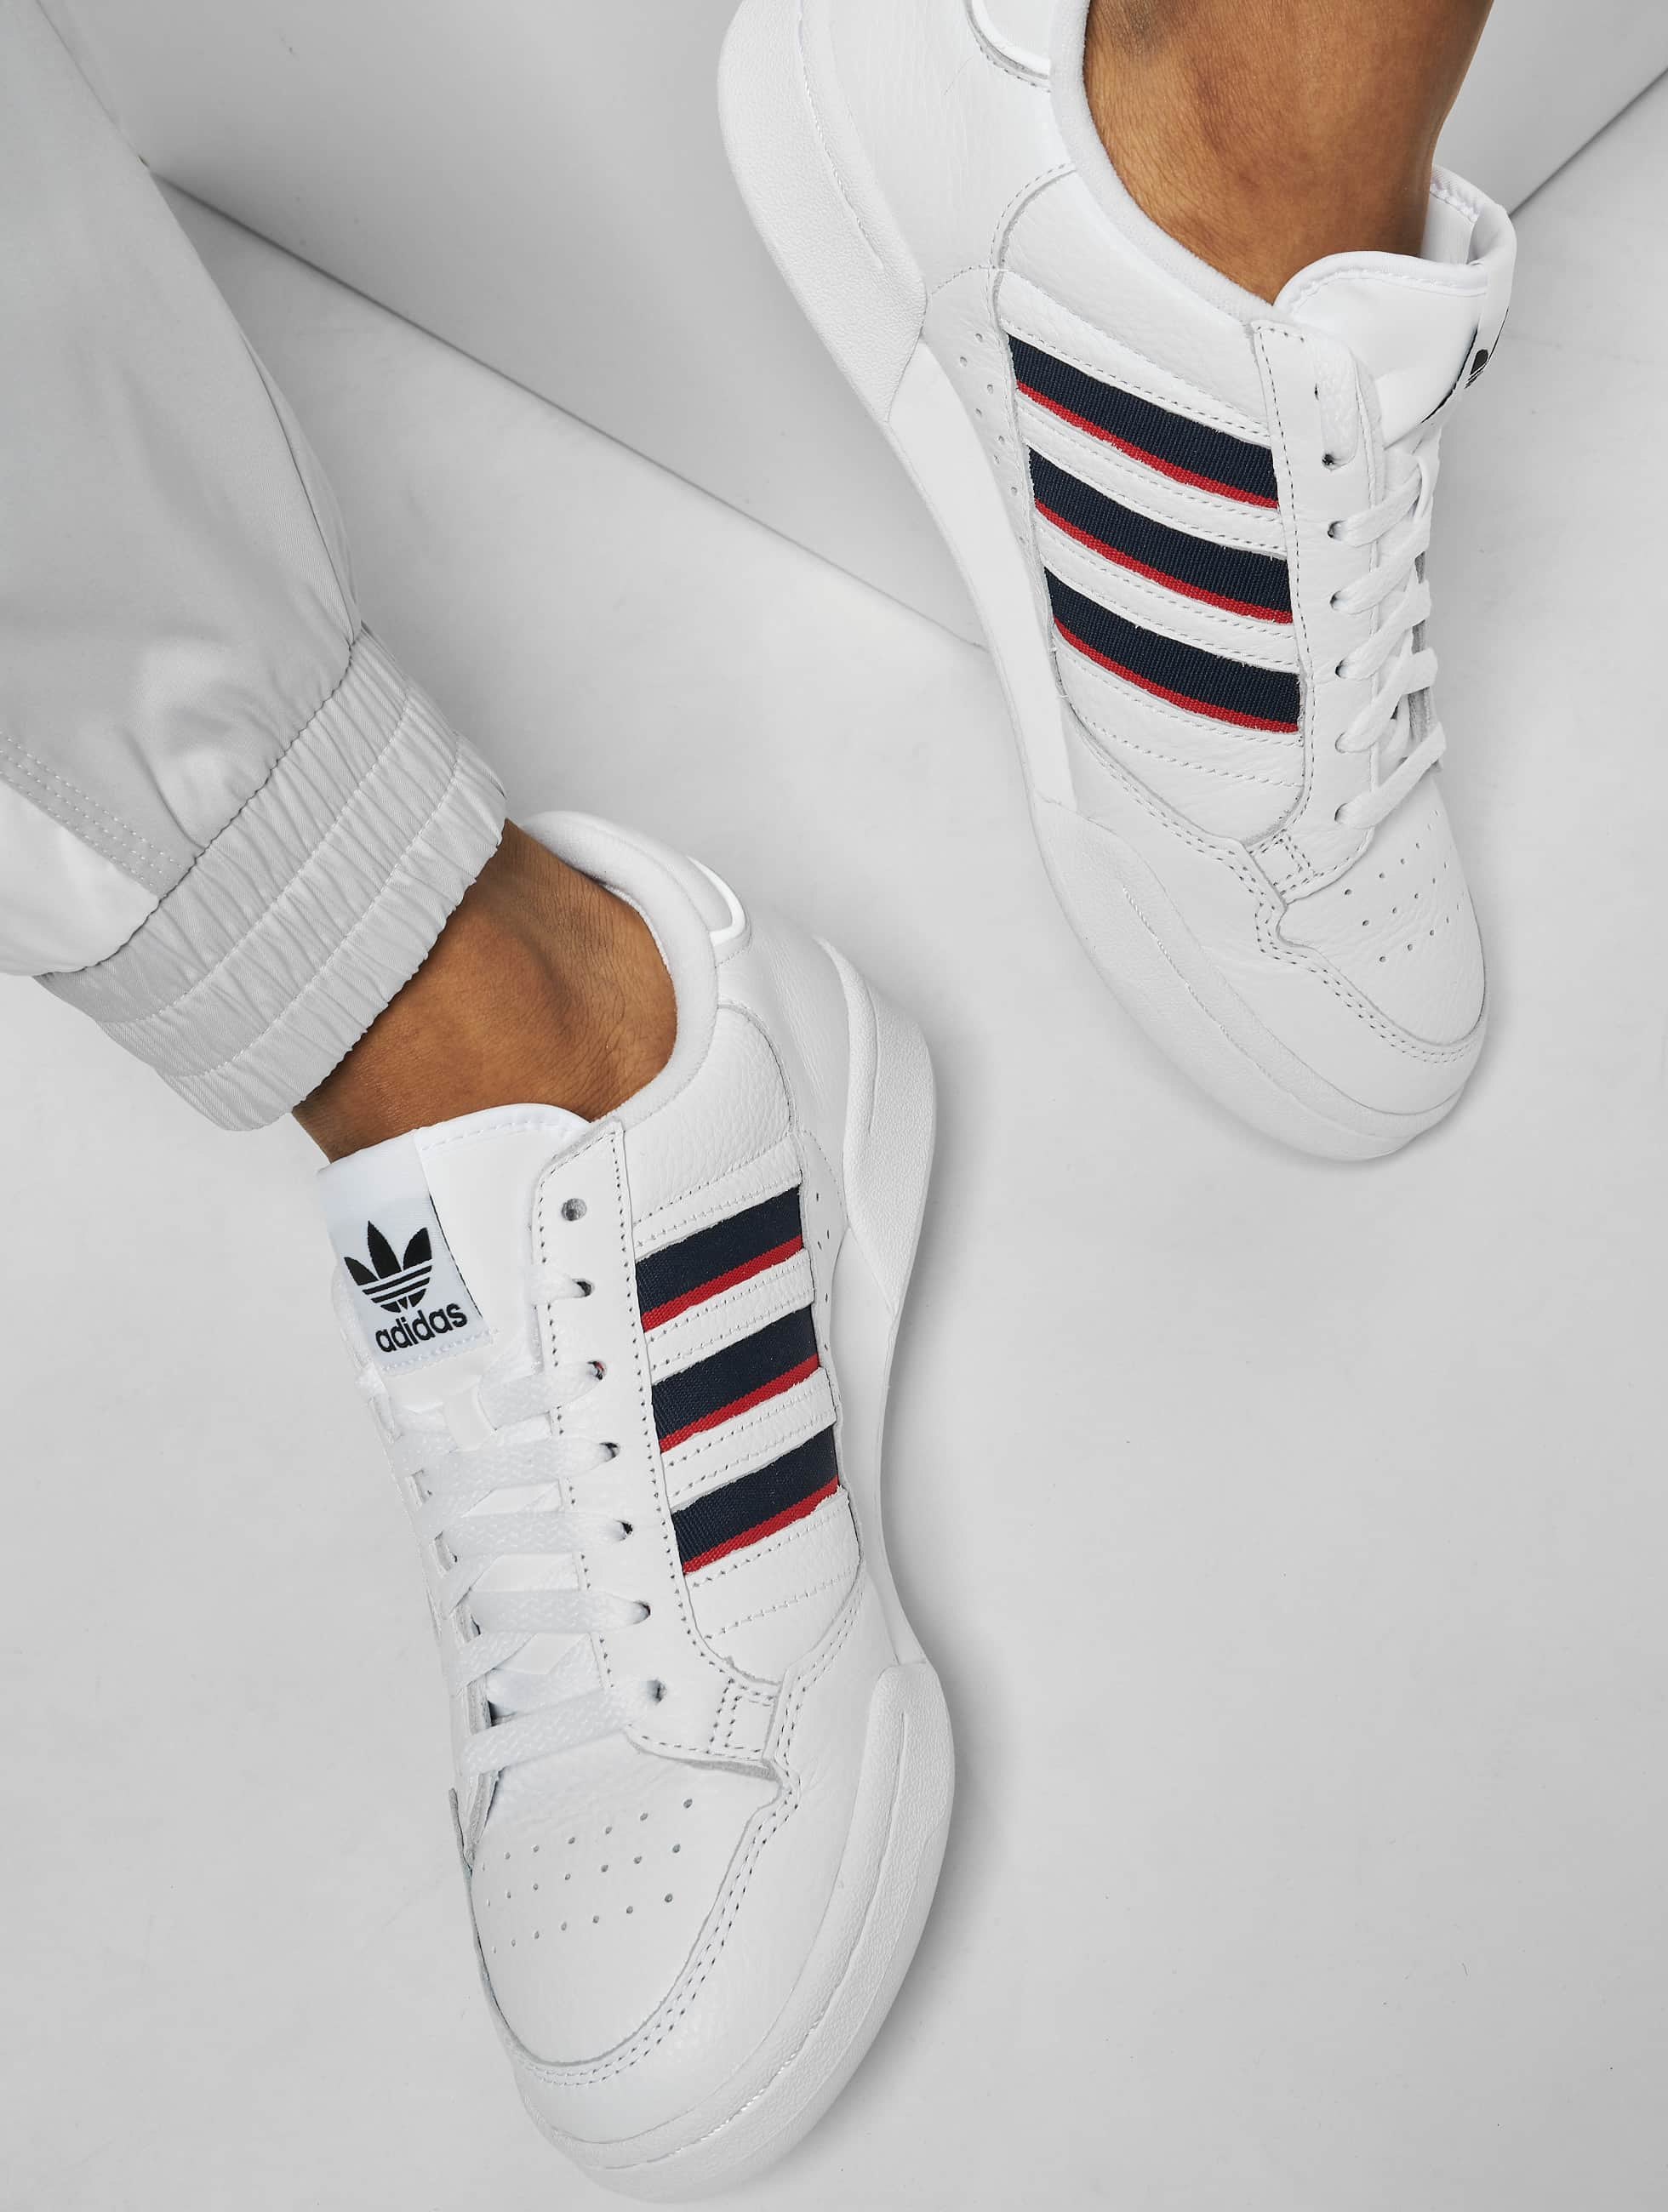 Druipend Verheugen Menselijk ras adidas Originals schoen / sneaker Continental 80 Stripe in wit 831214